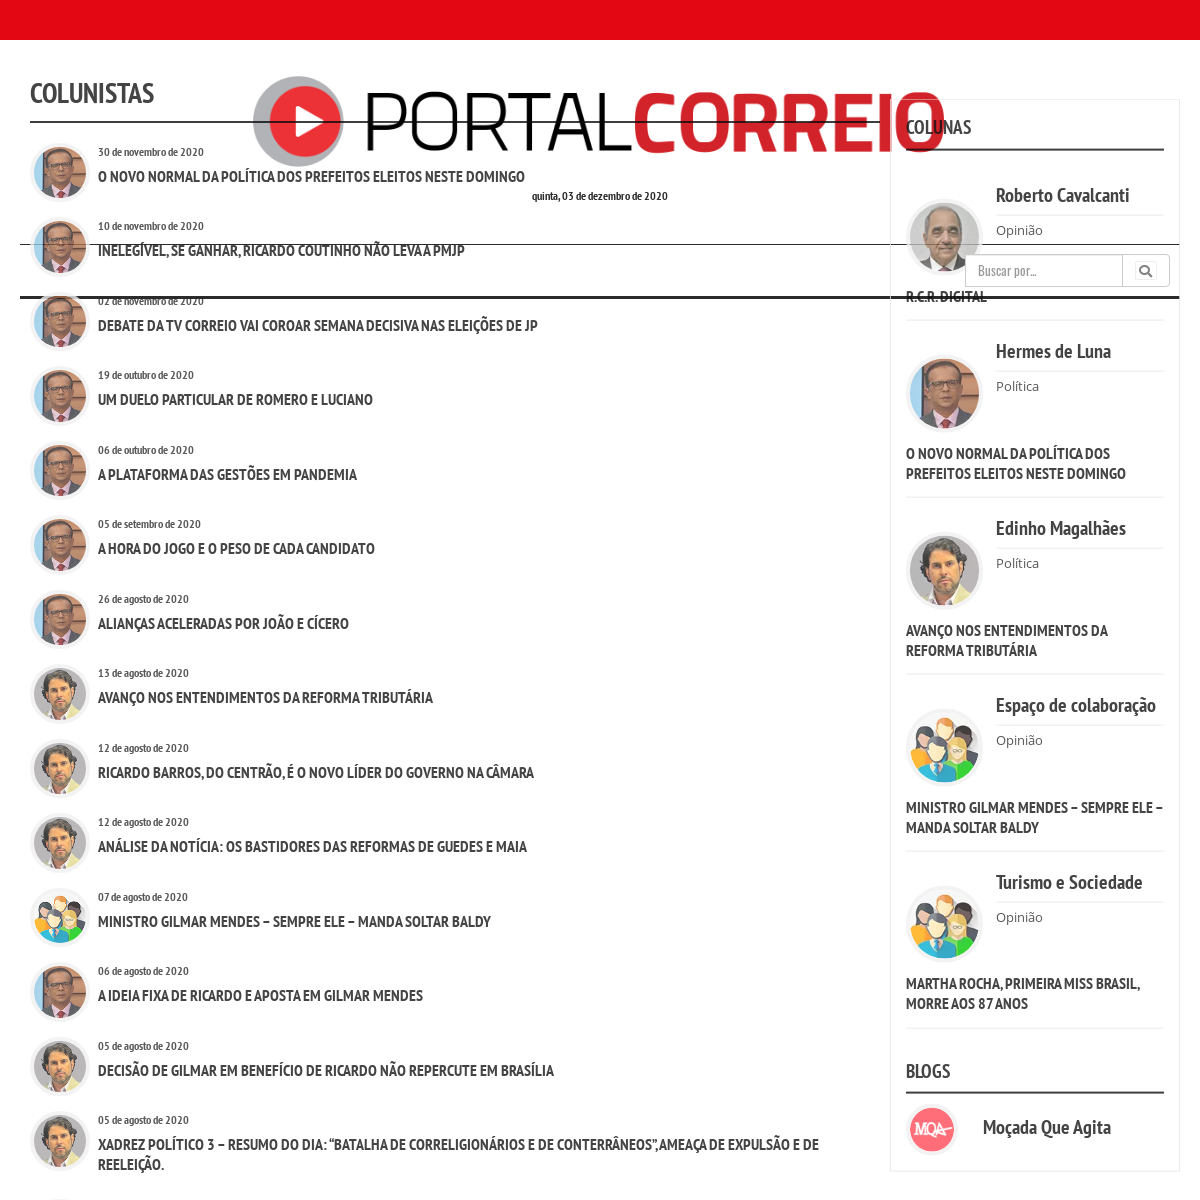 A complete backup of correiodaparaiba.com.br